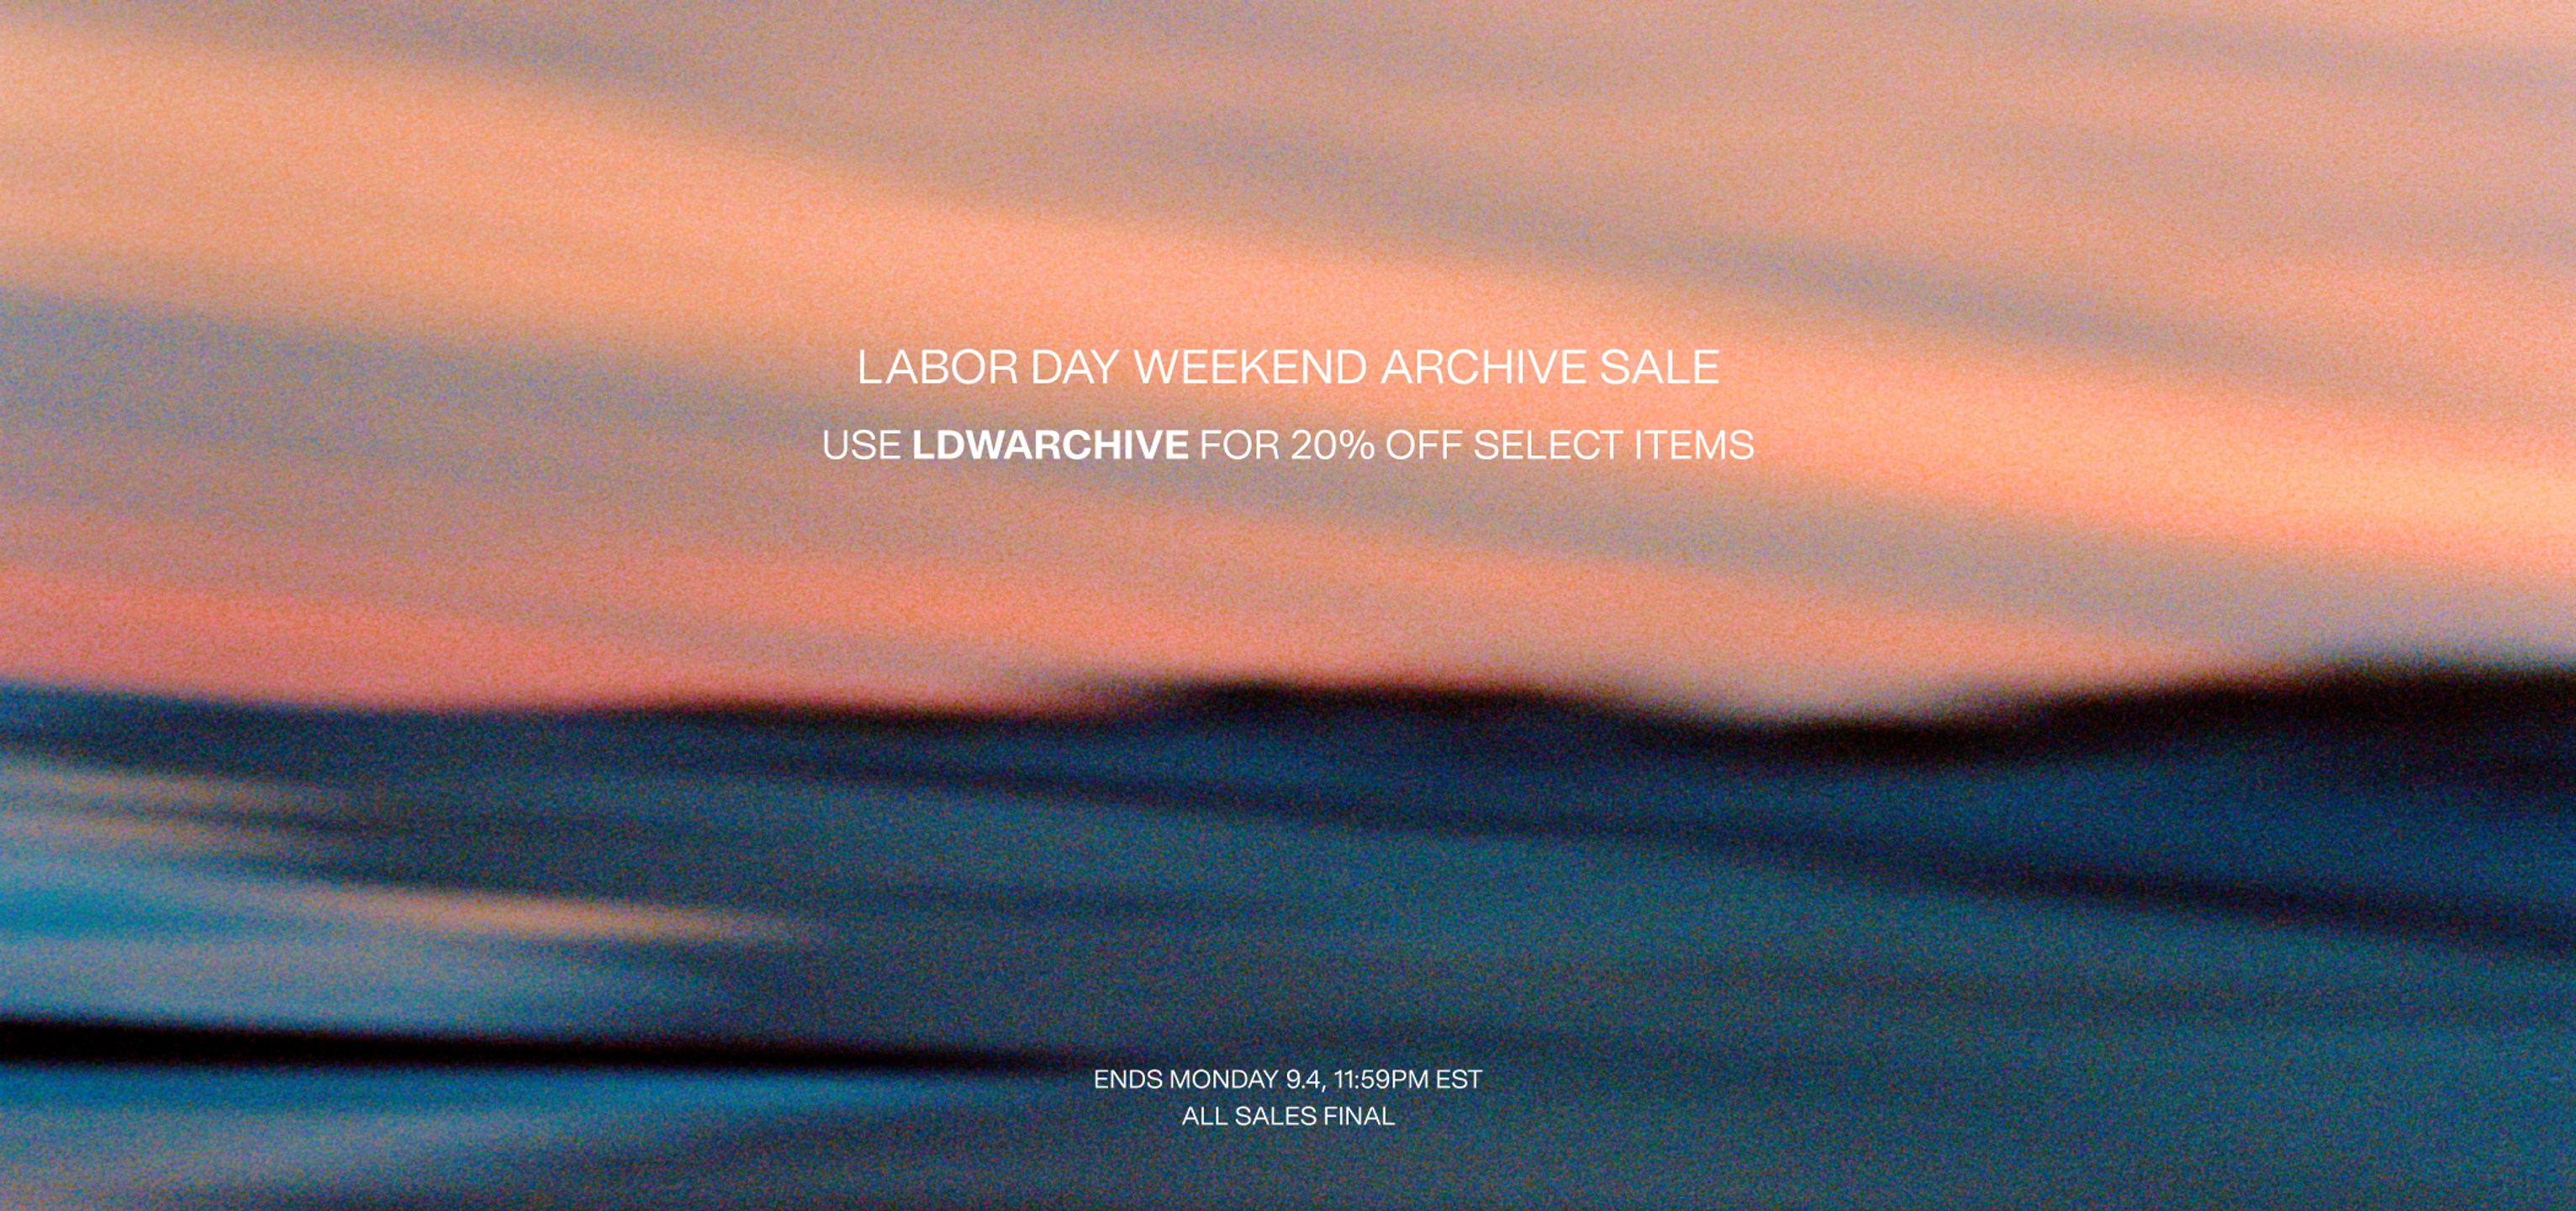 LDW Archive Sale